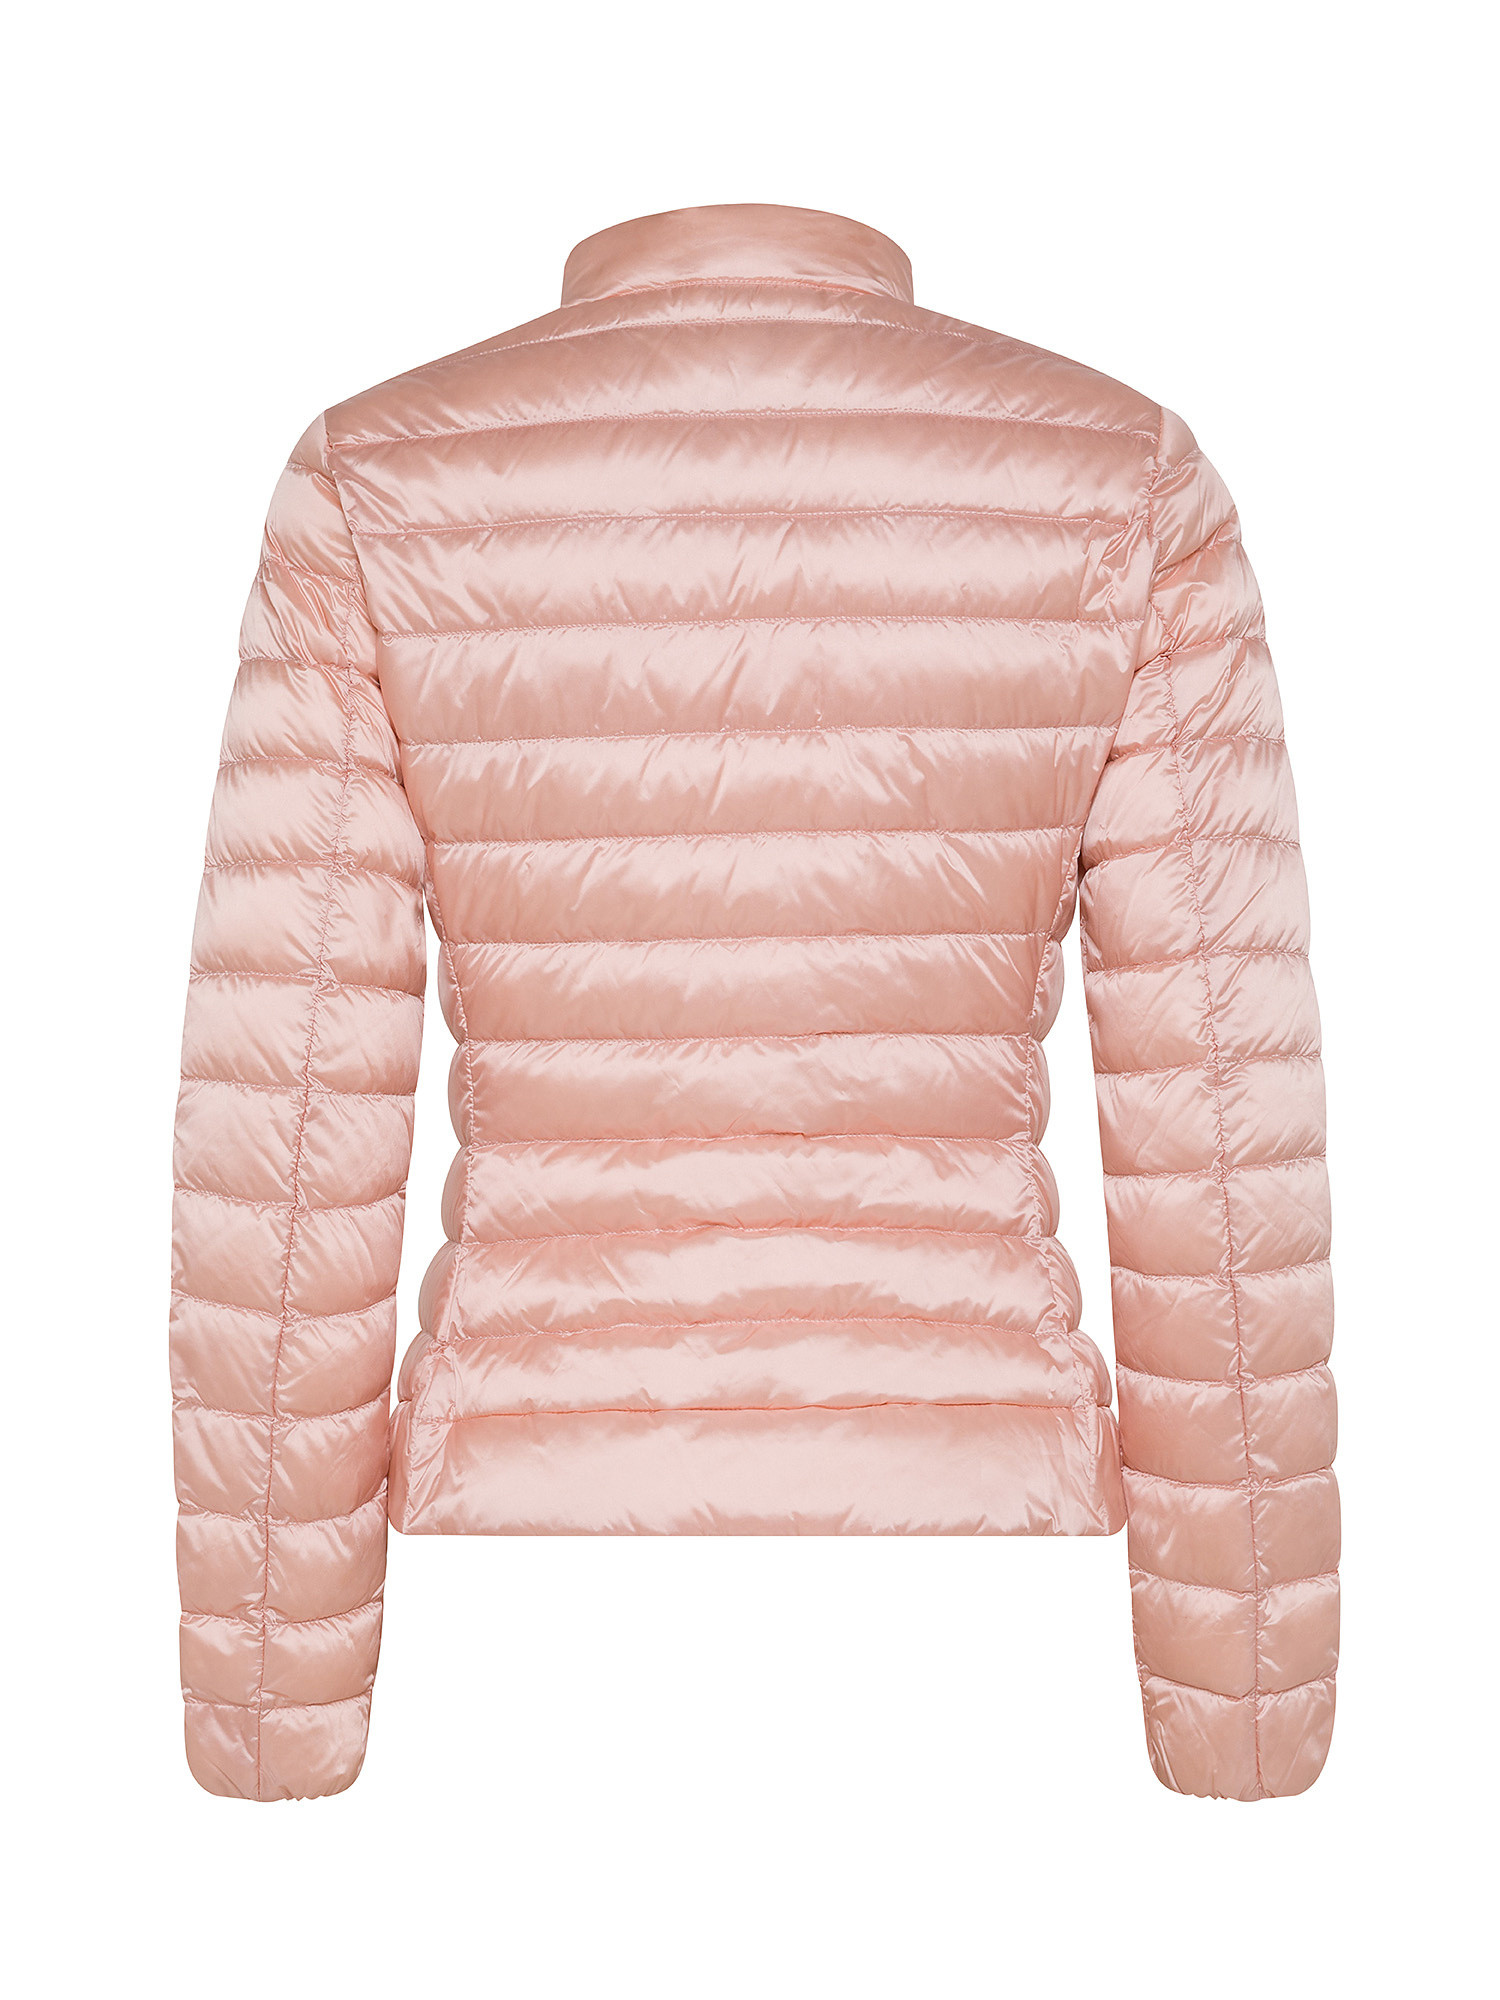 Ciesse Piumini - Pola Long down jacket, Powder Pink, large image number 1